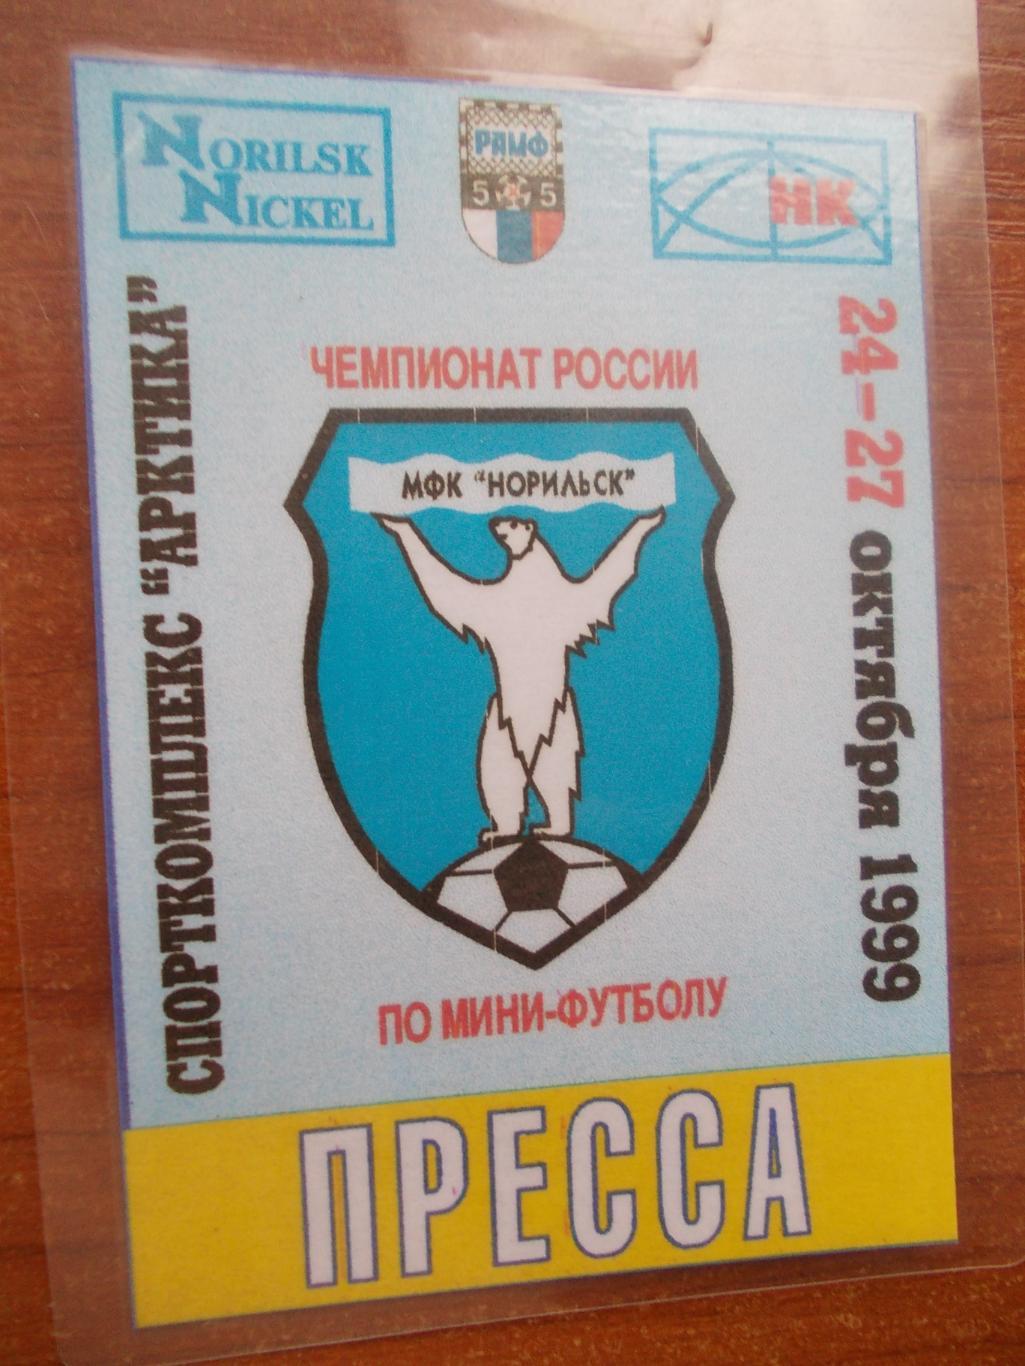 Аккредитация на тур чемпионата России по мини-футболу